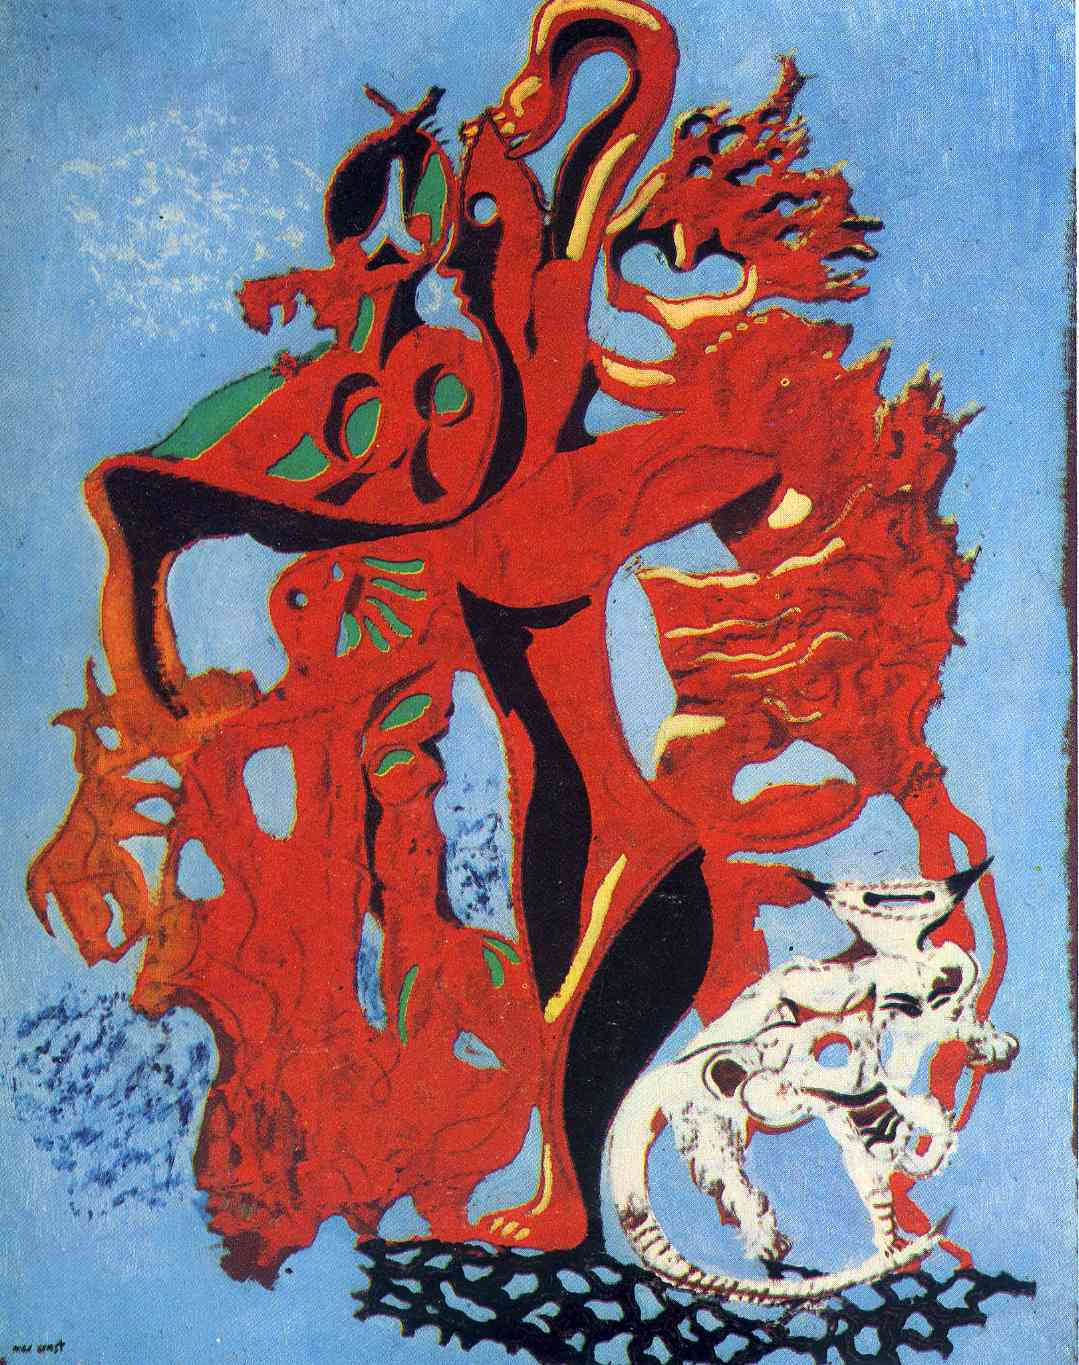 Max+Ernst-1891-1976 (57).jpg